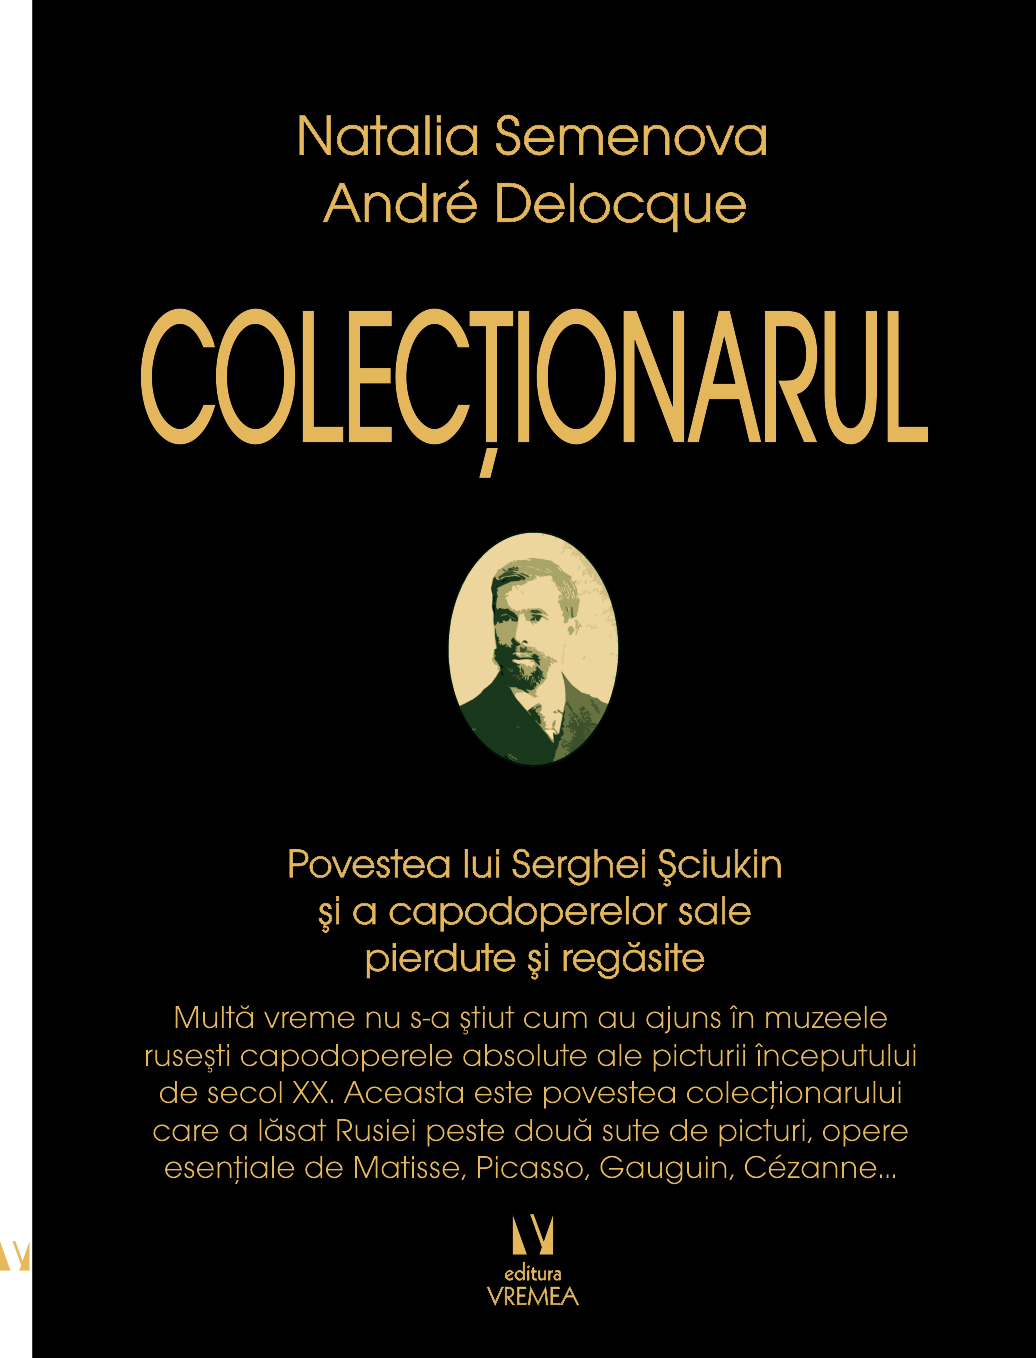 Colectionarul | Natalia Semenova, Andre Delocque carturesti.ro poza bestsellers.ro